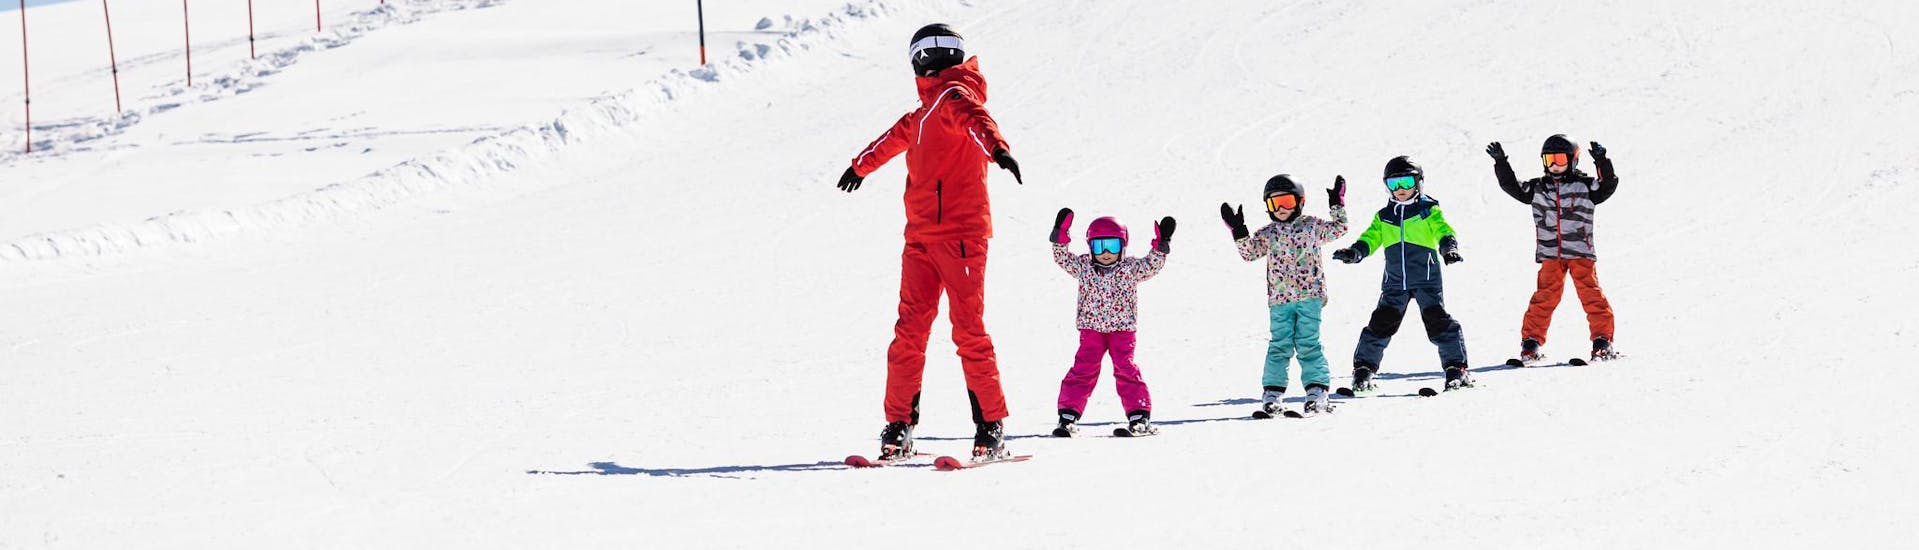 Skileraar en kinderen skiën de piste af tijdens een skiles.